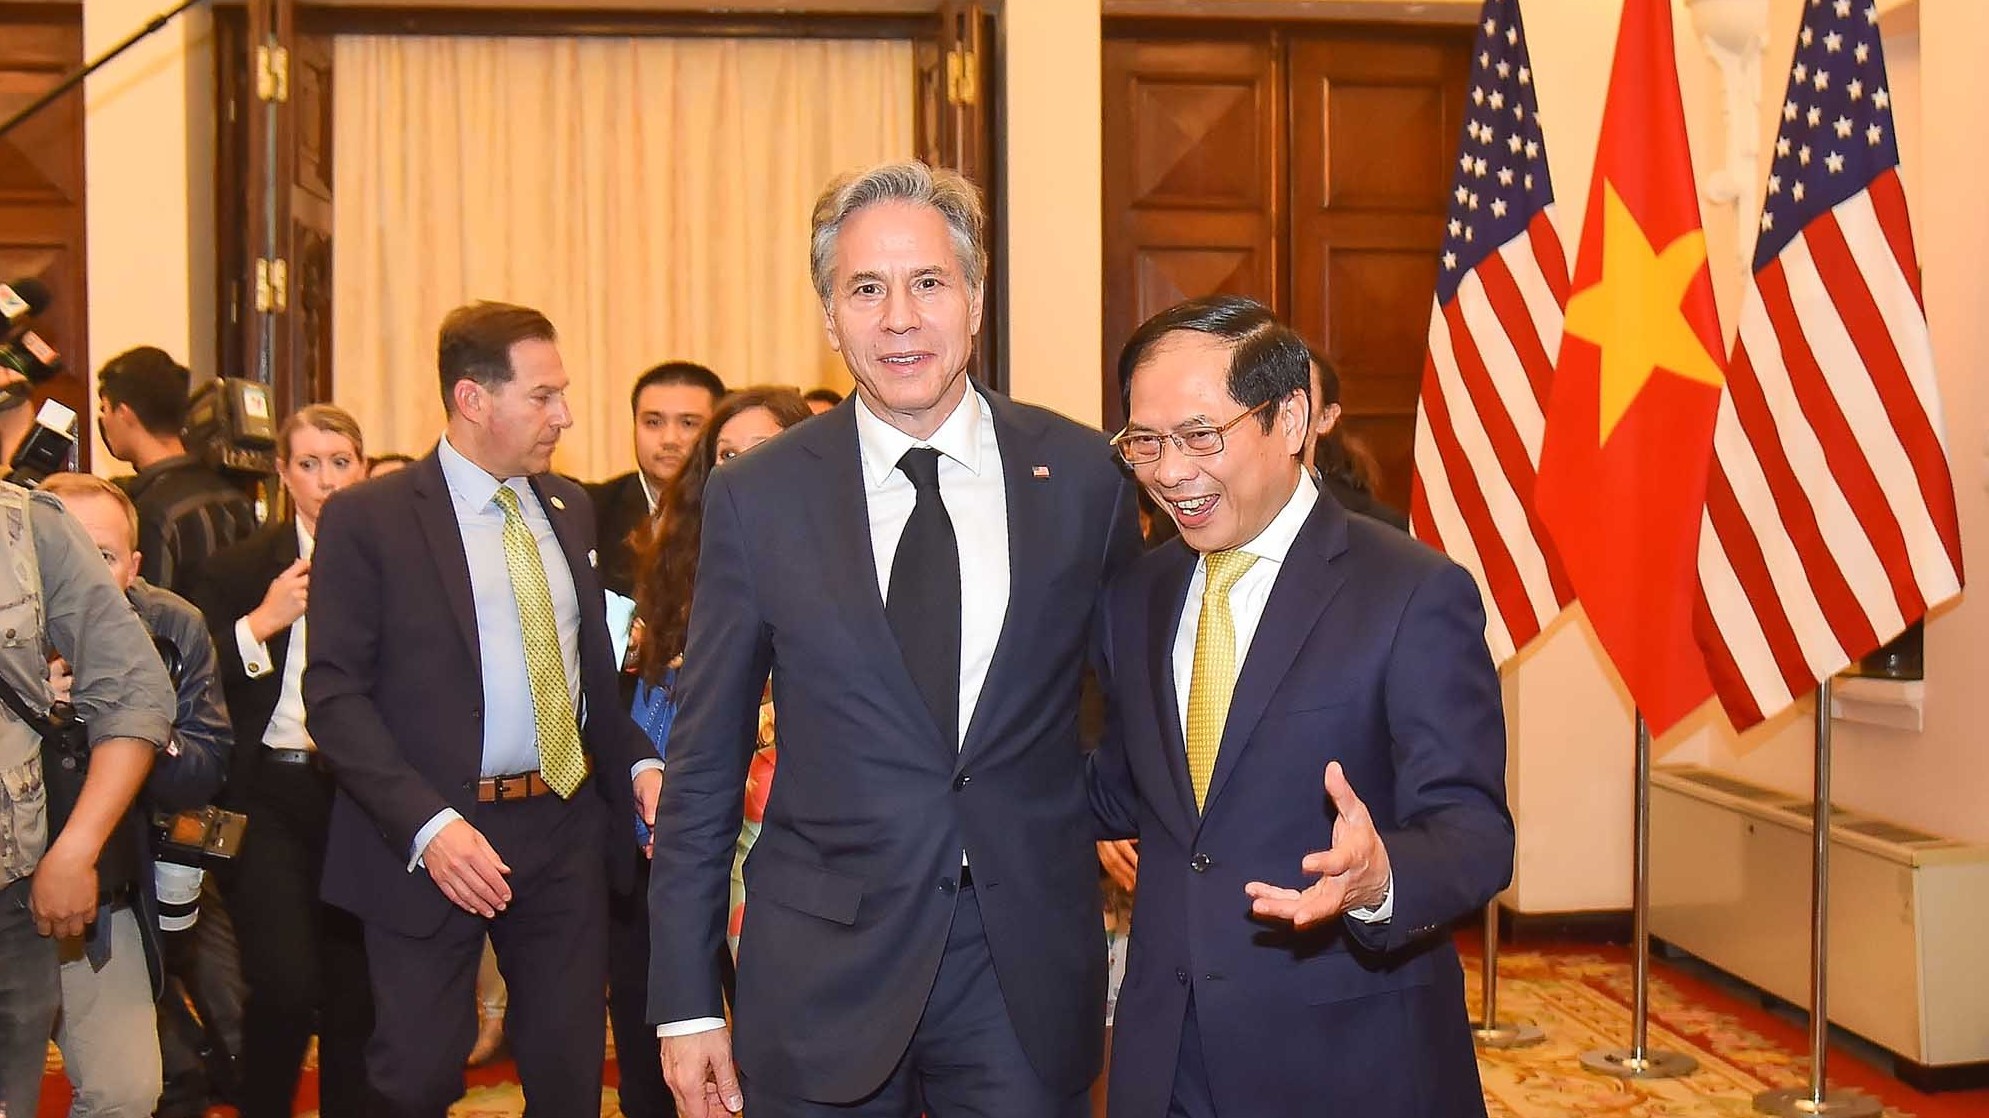 Hoa Kỳ coi trọng quan hệ hữu nghị và hợp tác toàn diện với Việt Nam